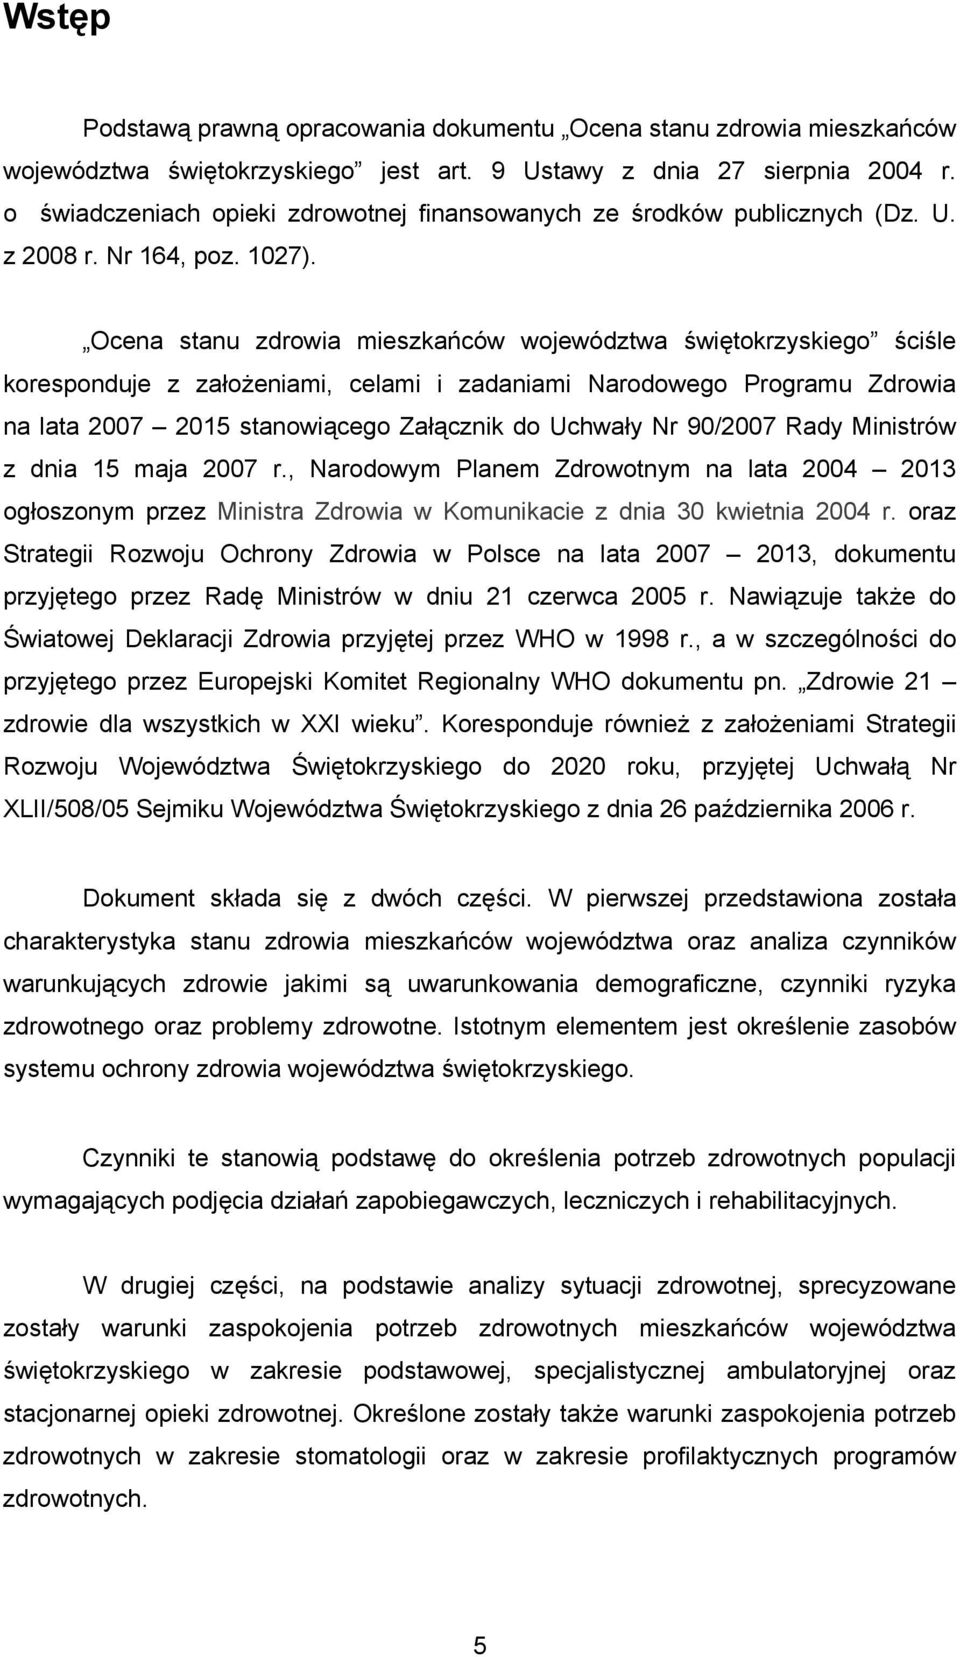 Ocena stanu zdrowia mieszkańców województwa świętokrzyskiego ściśle koresponduje z założeniami, celami i zadaniami Narodowego Programu Zdrowia na lata 2007 2015 stanowiącego Załącznik do Uchwały Nr